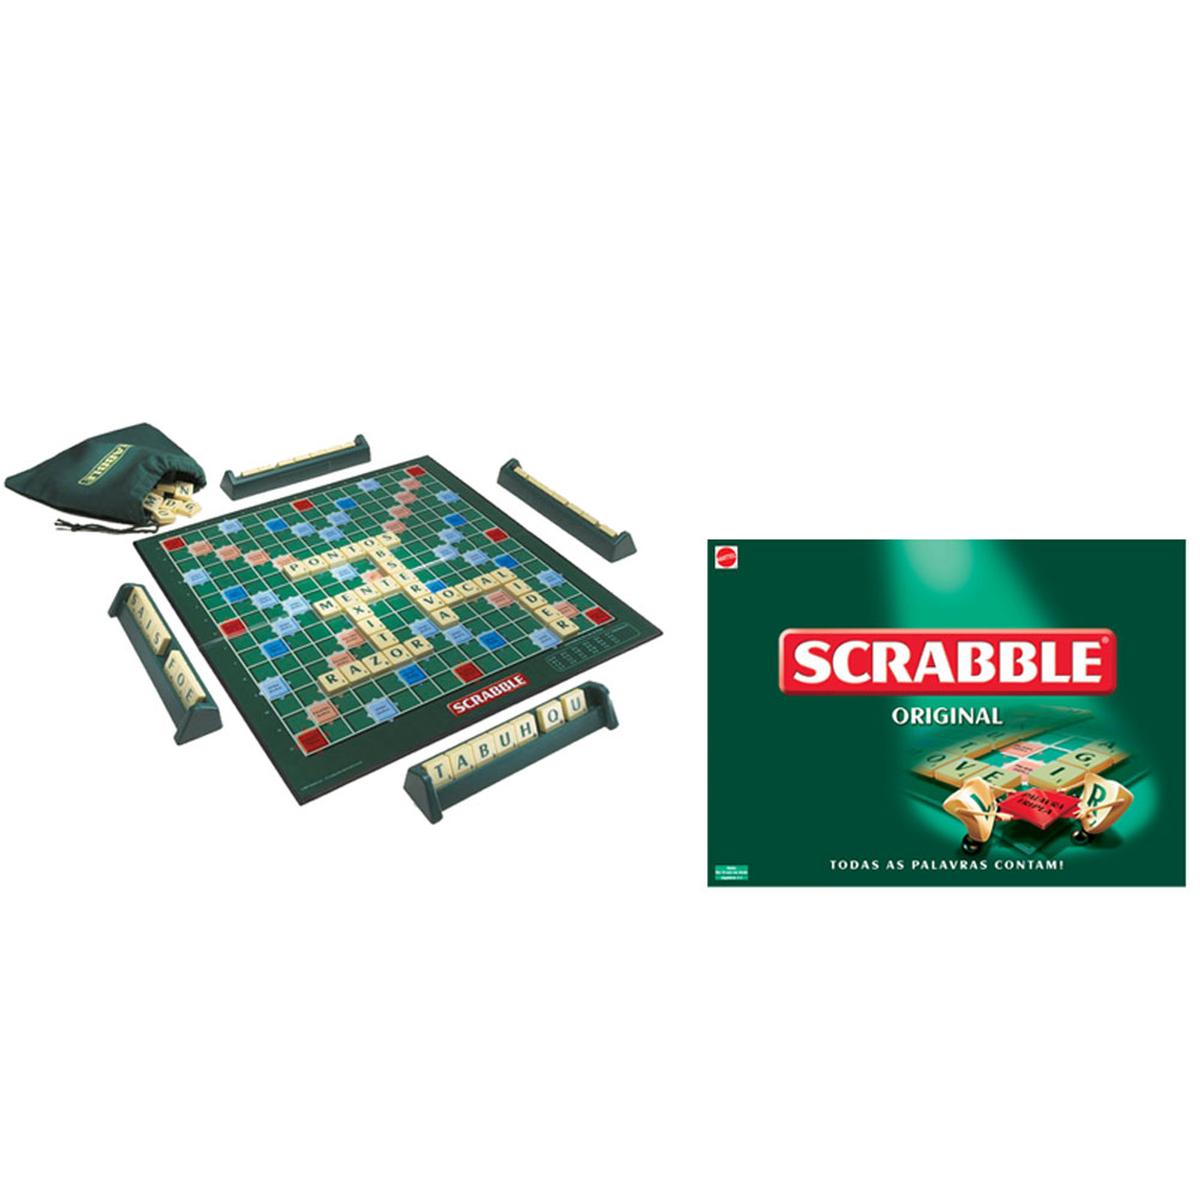 EA finalmente adapta jogo Scrabble para o português do Brasil